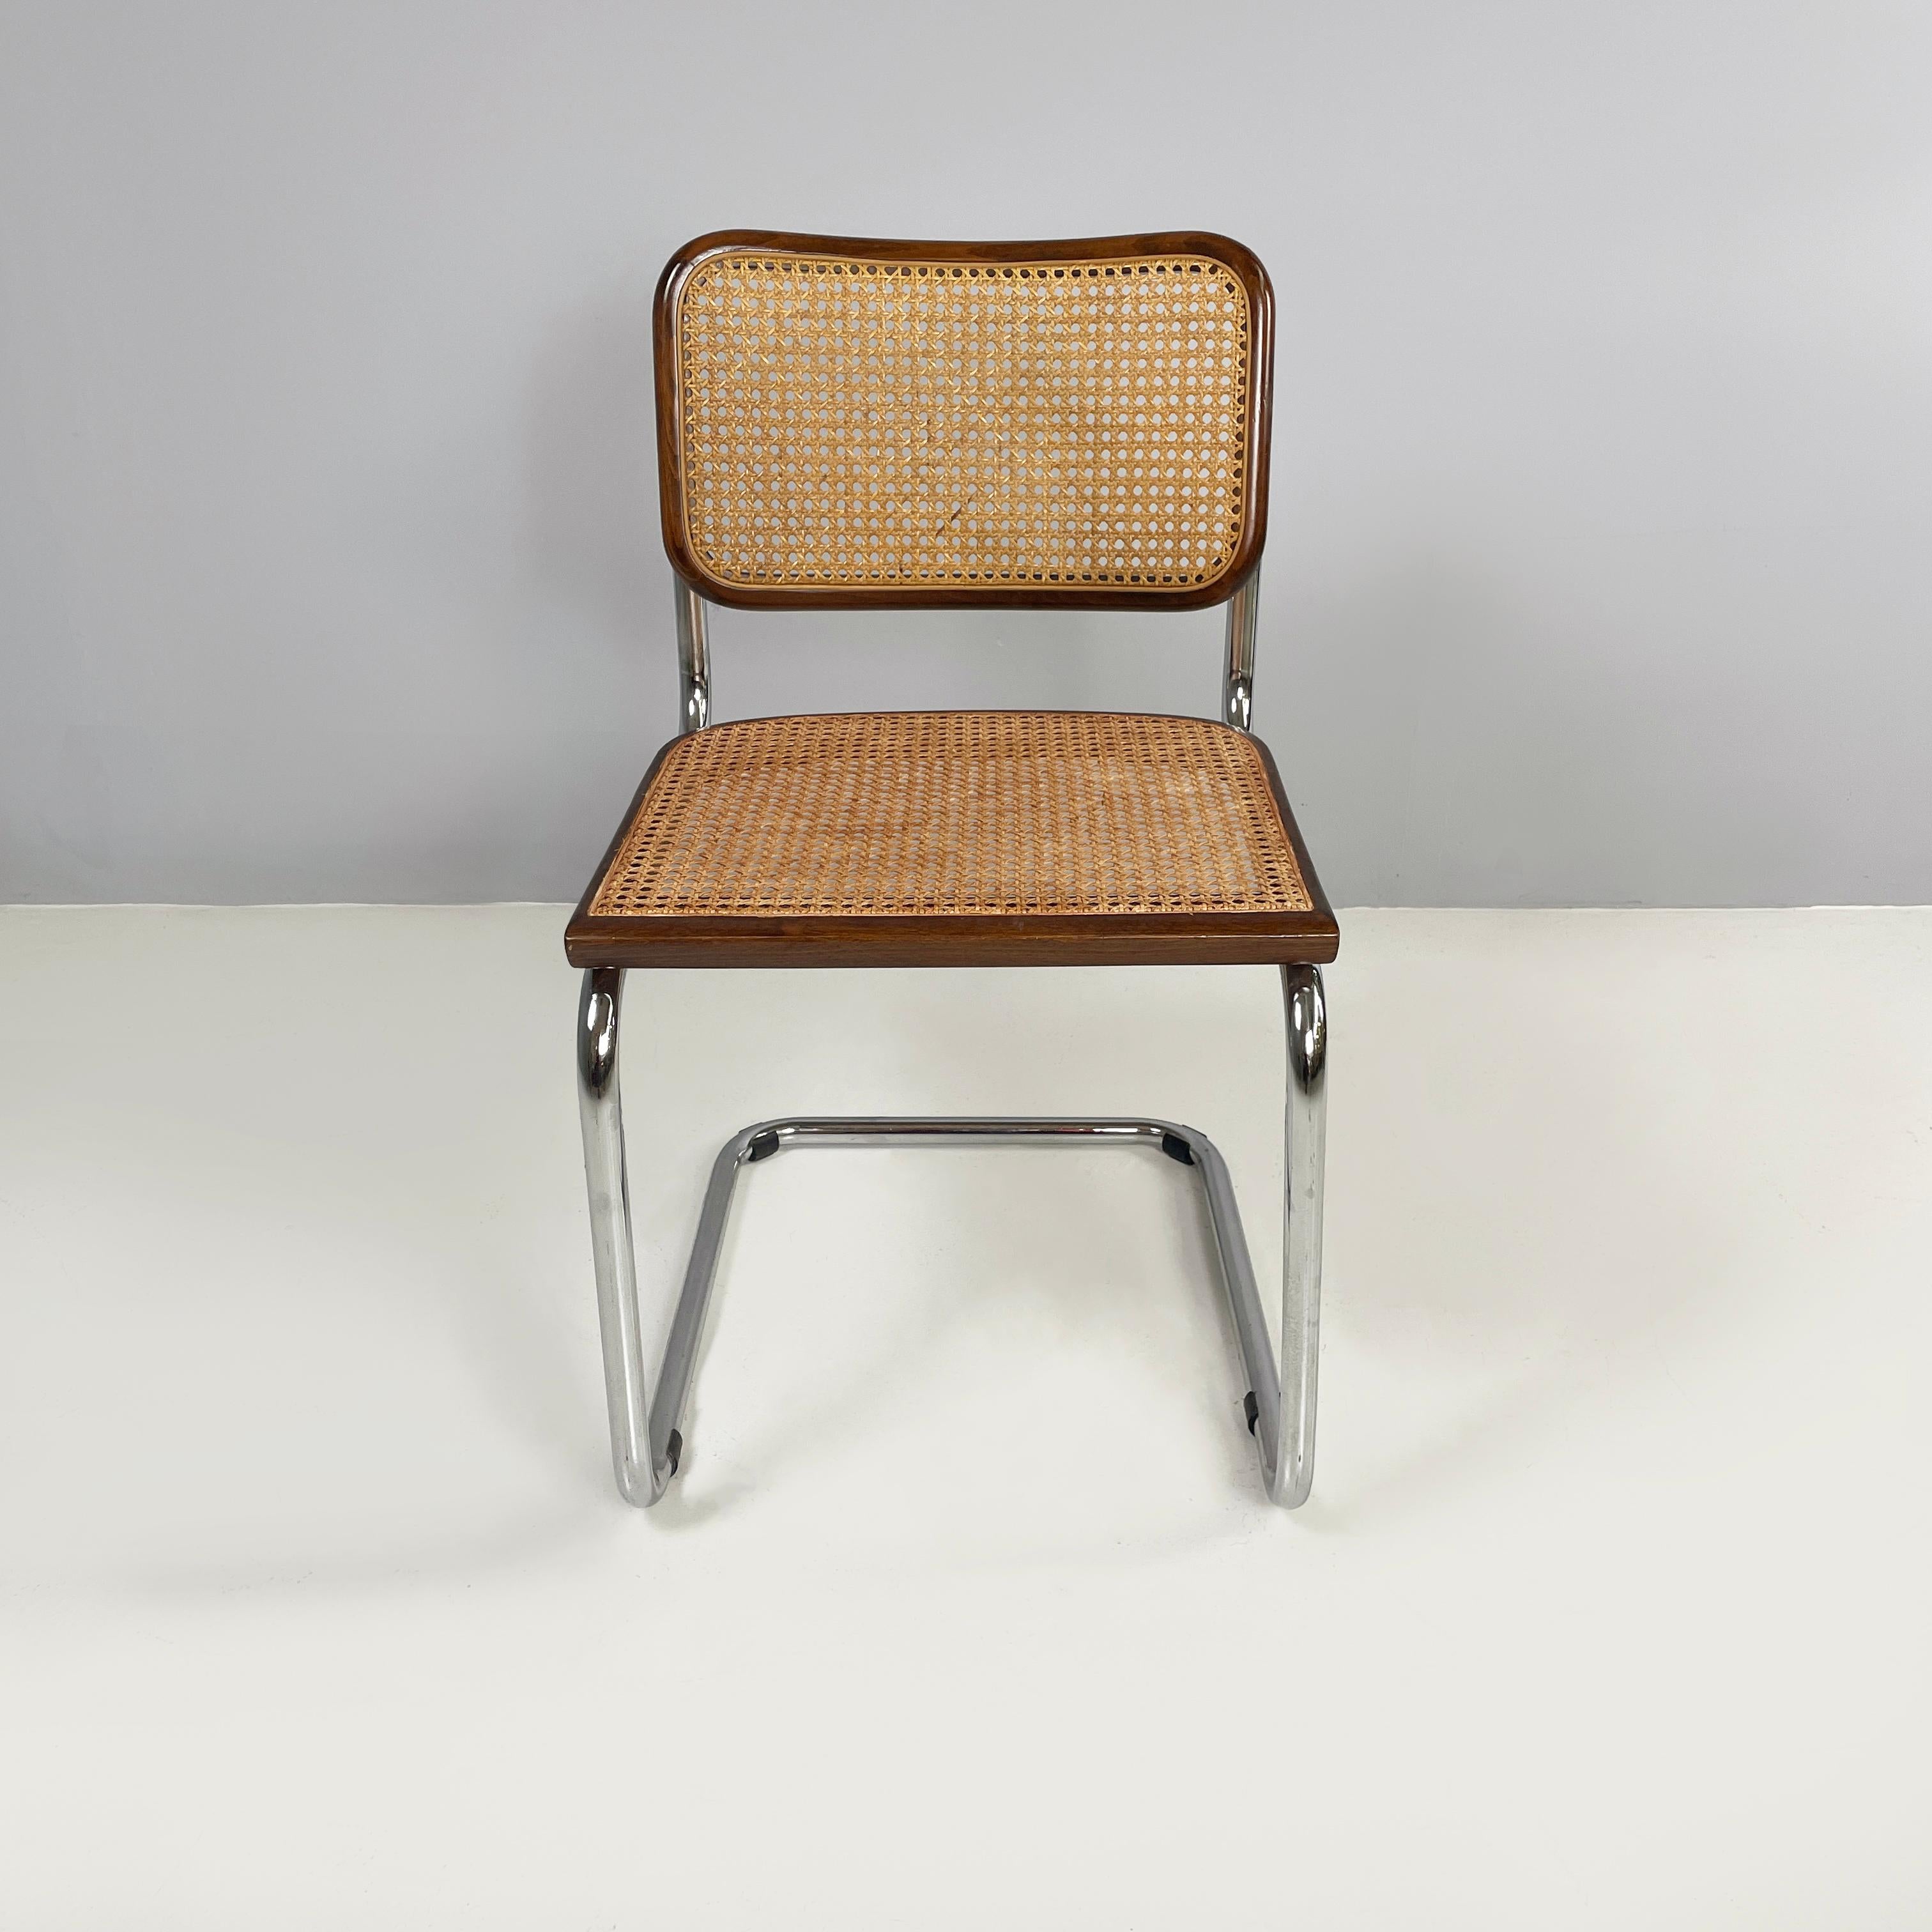 Chaise italienne moderne du milieu du siècle dernier en paille, bois et acier, années 1960
Chaise avec assise et dossier en paille de Vienne foncée et avec profils en bois. La structure est en acier tubulaire courbé. Pieds en caoutchouc noir.
Années